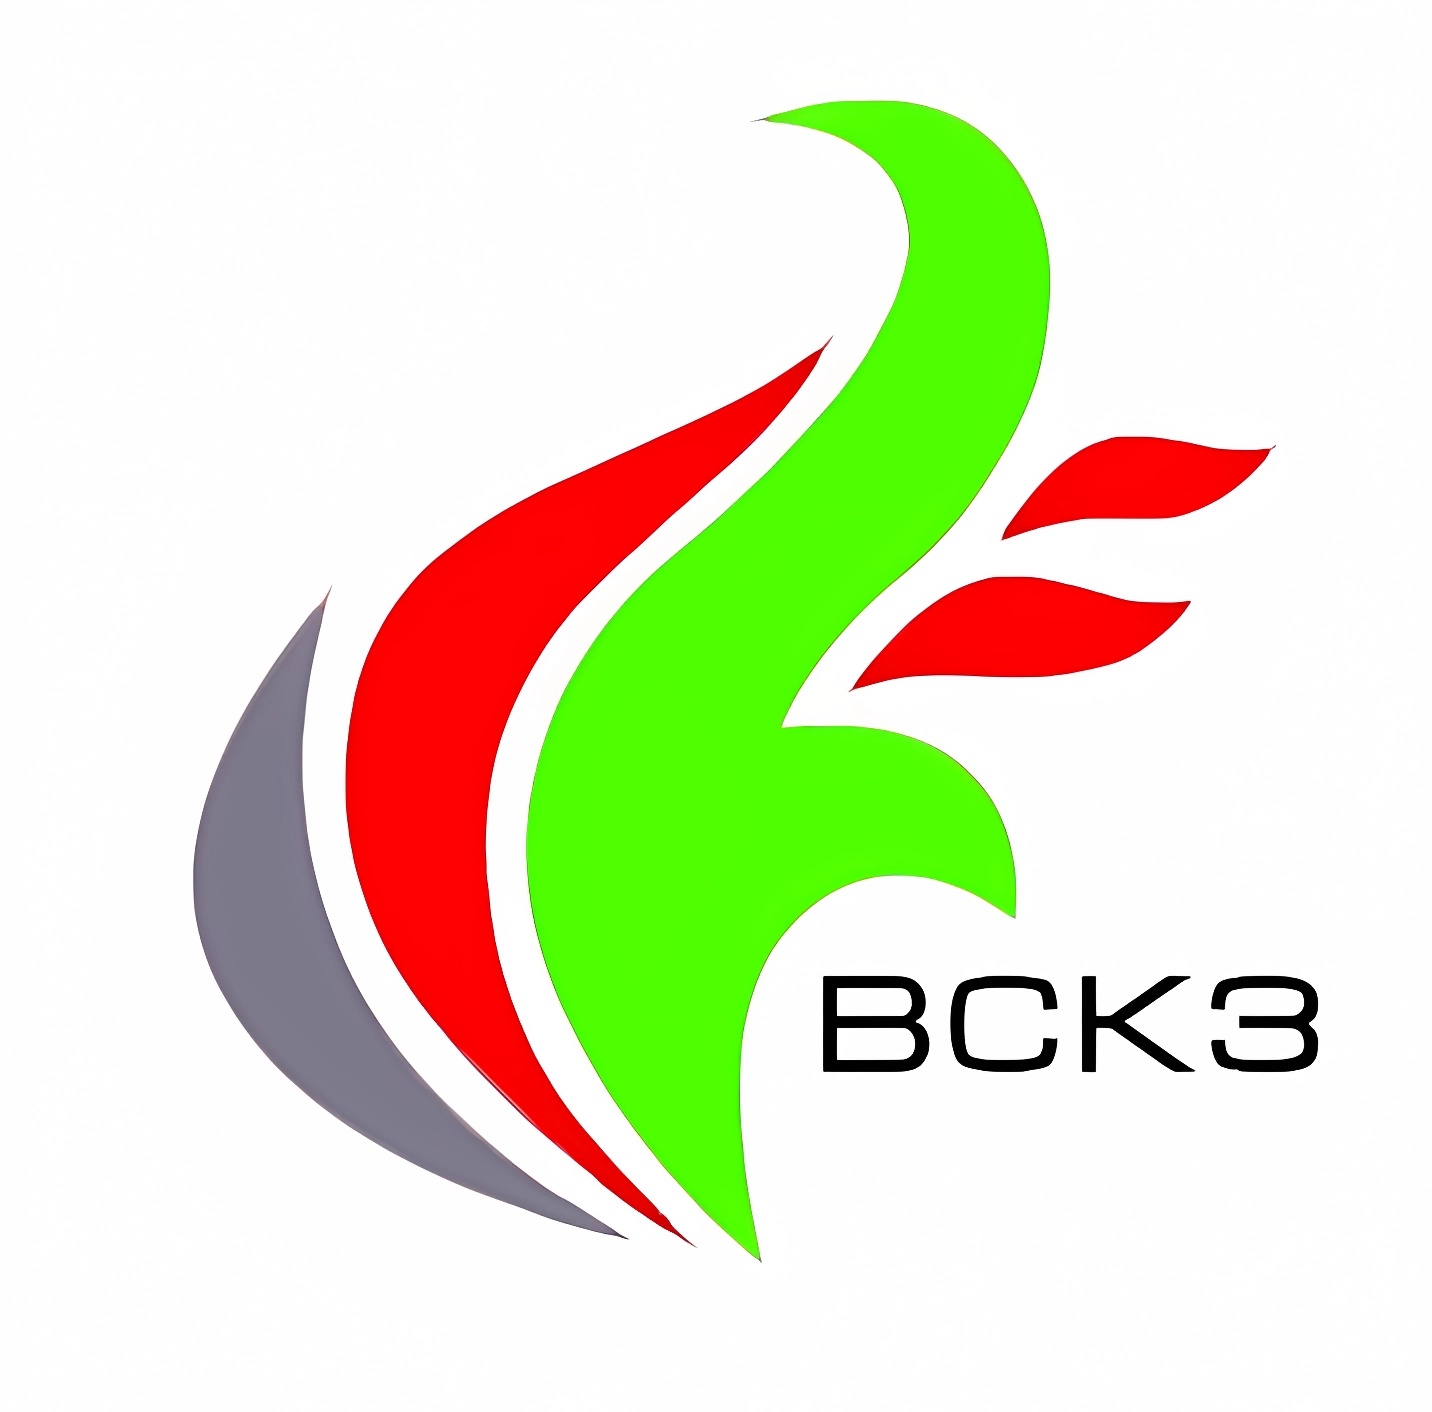 вскз логотип завод котлы vskz green logo лого вектор высокое качество